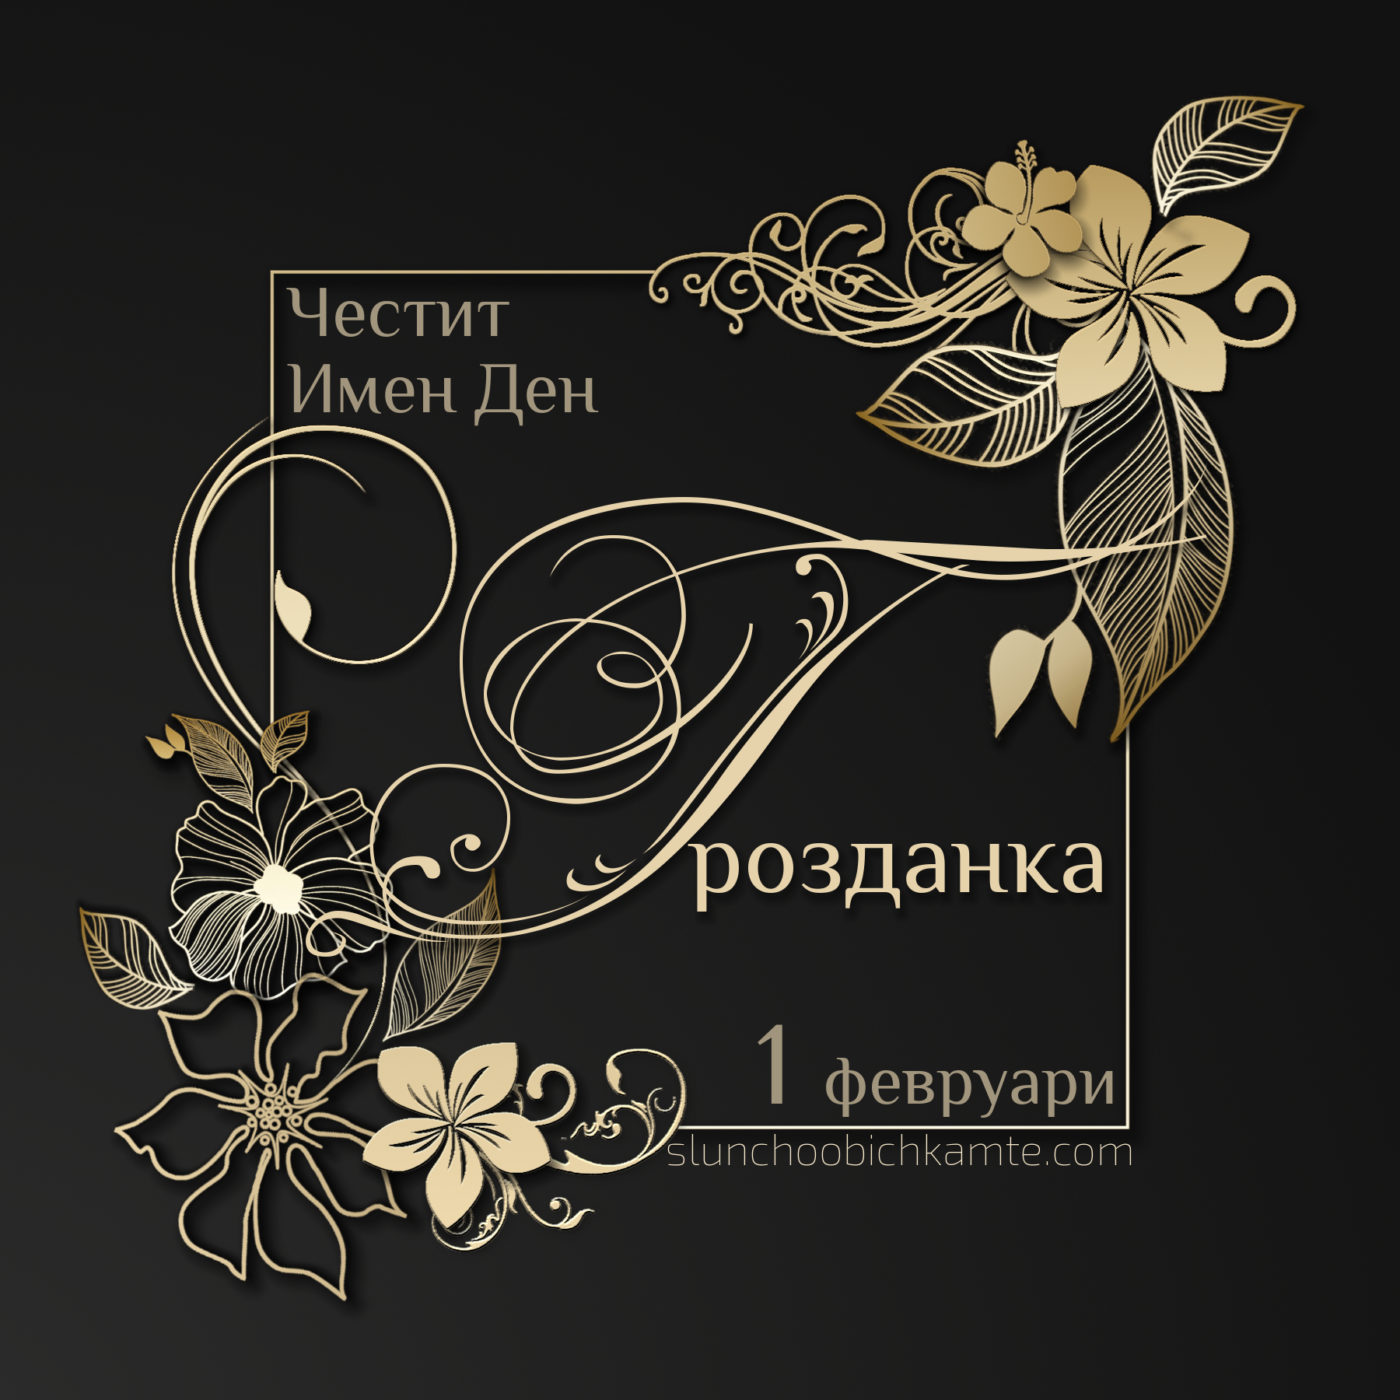 Честит имен ден Грозданка - 1 февруари - Трифоновден - Картички за Имен ден. Пожелай честит имен ден с оригинална картичка.